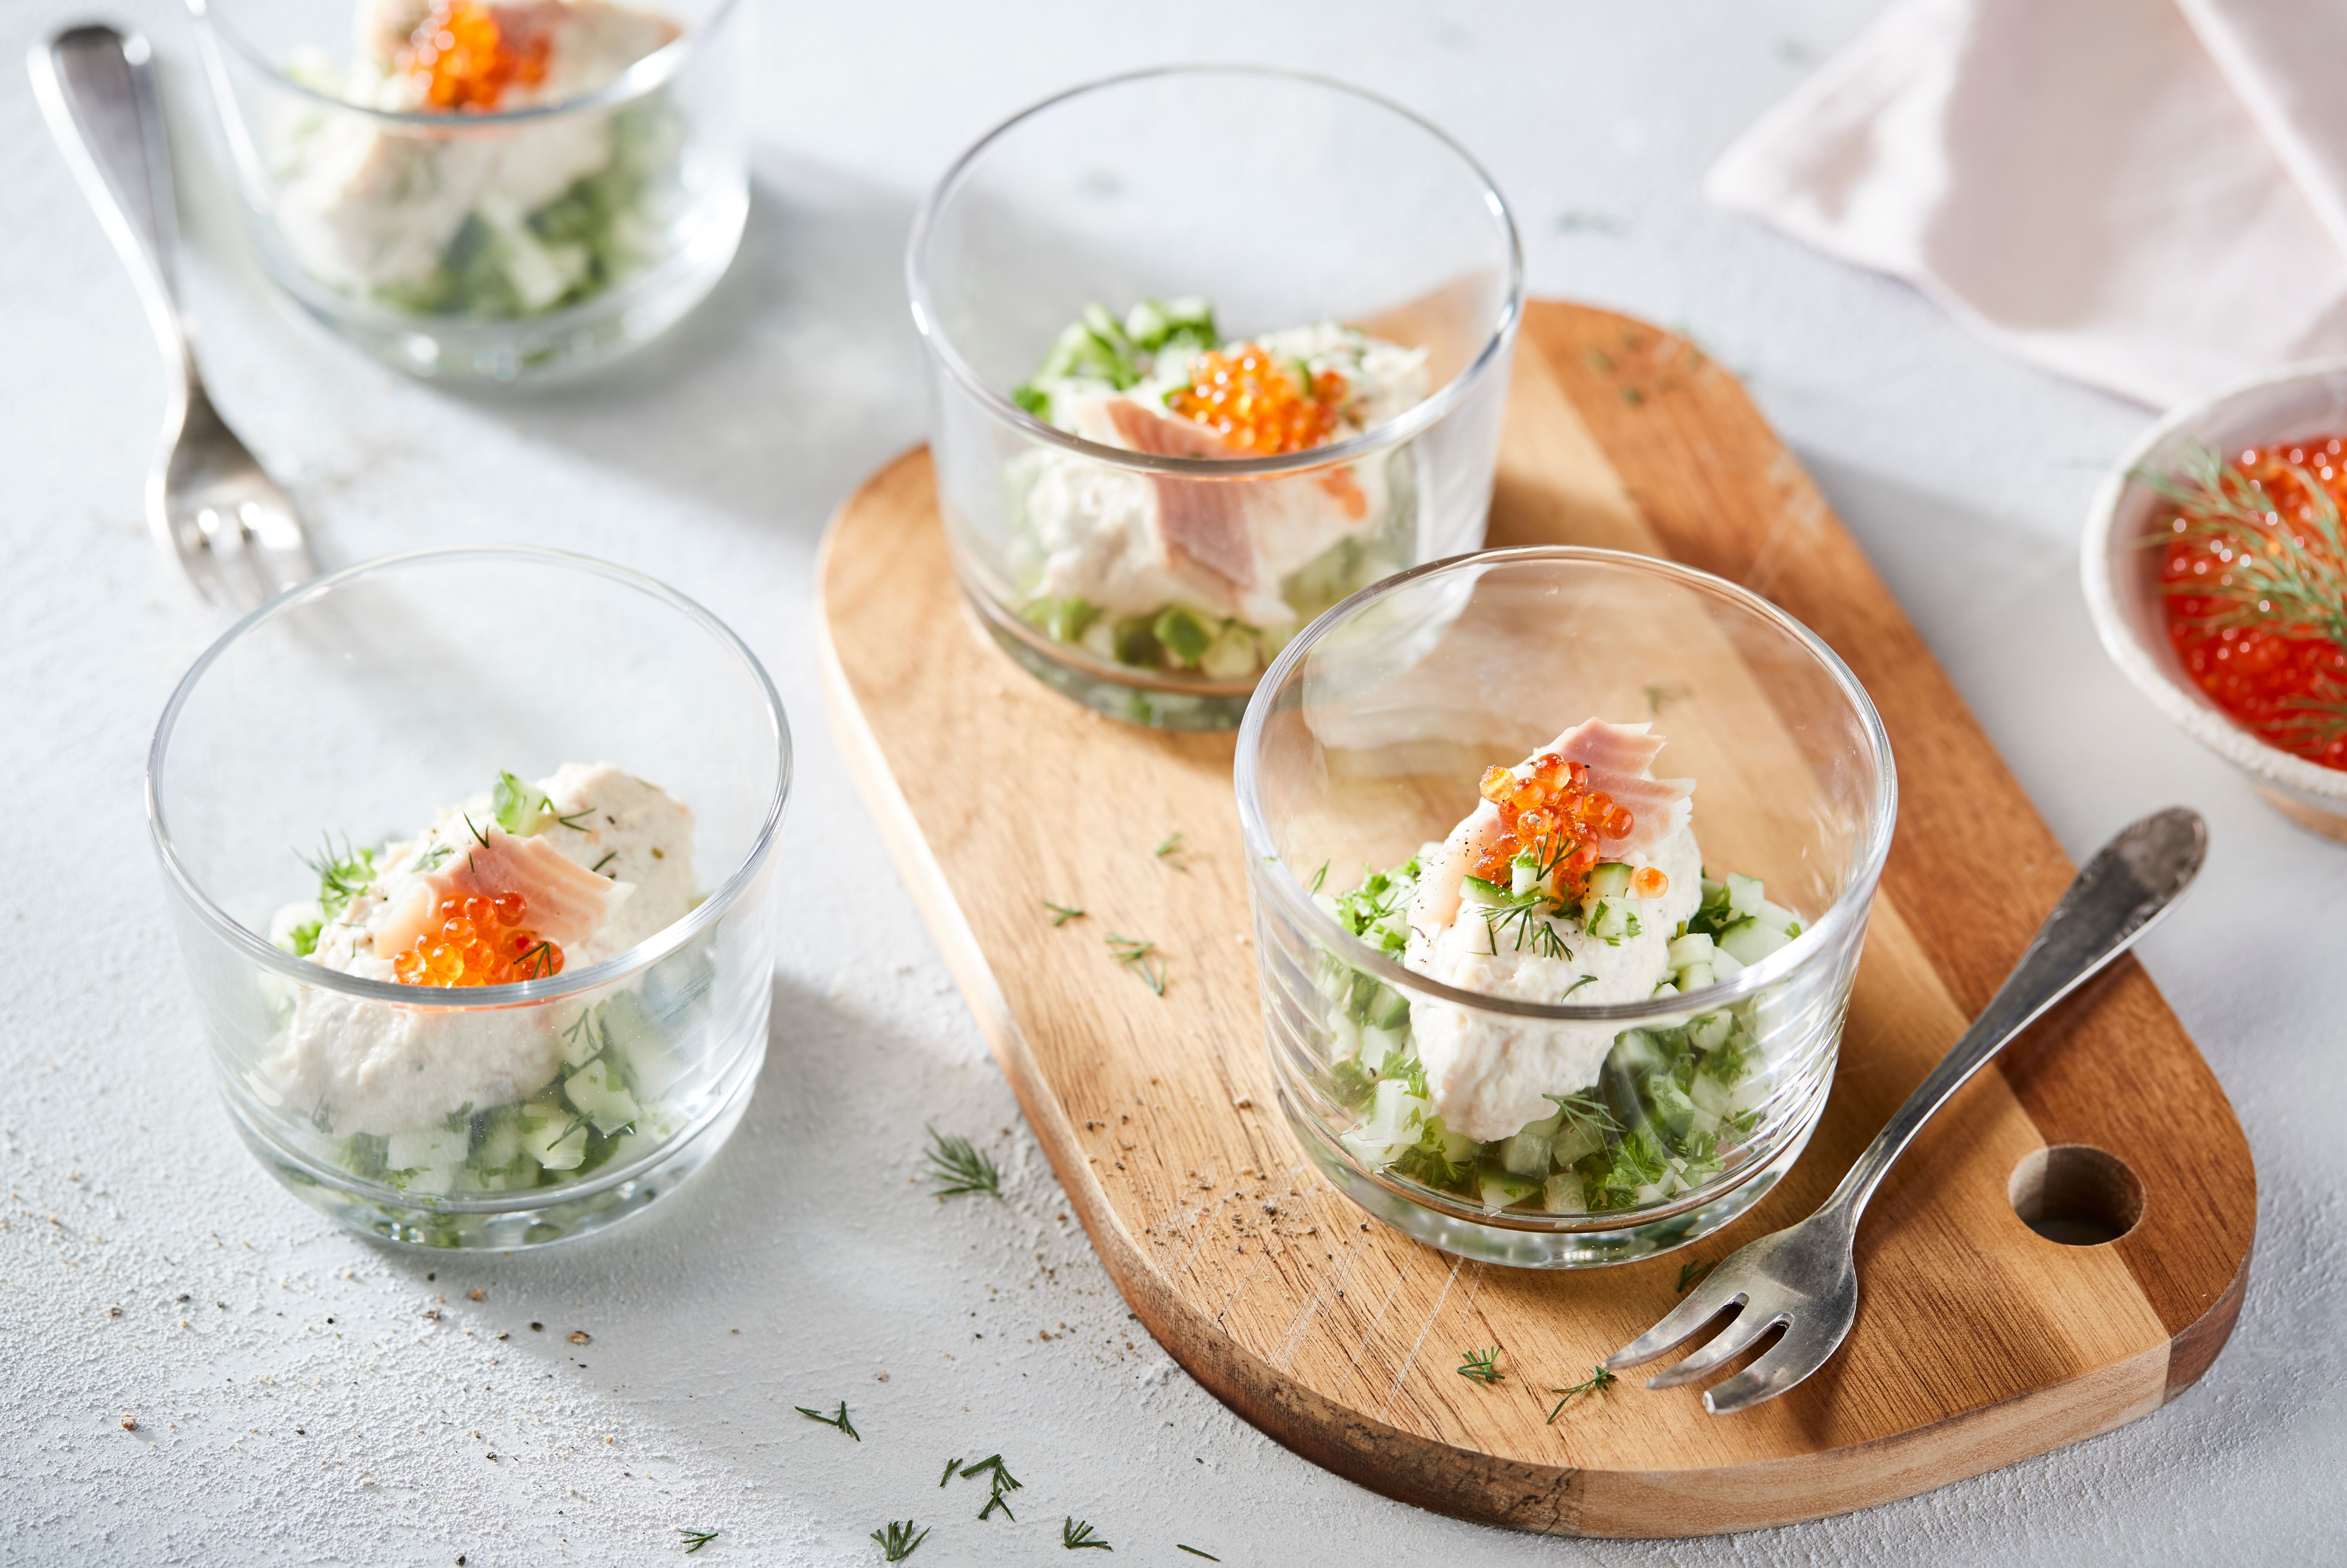 Salade in glaasjes, recept, feestelijke setting, 2 standpunten van in beeld brengen (topshot + close-up)